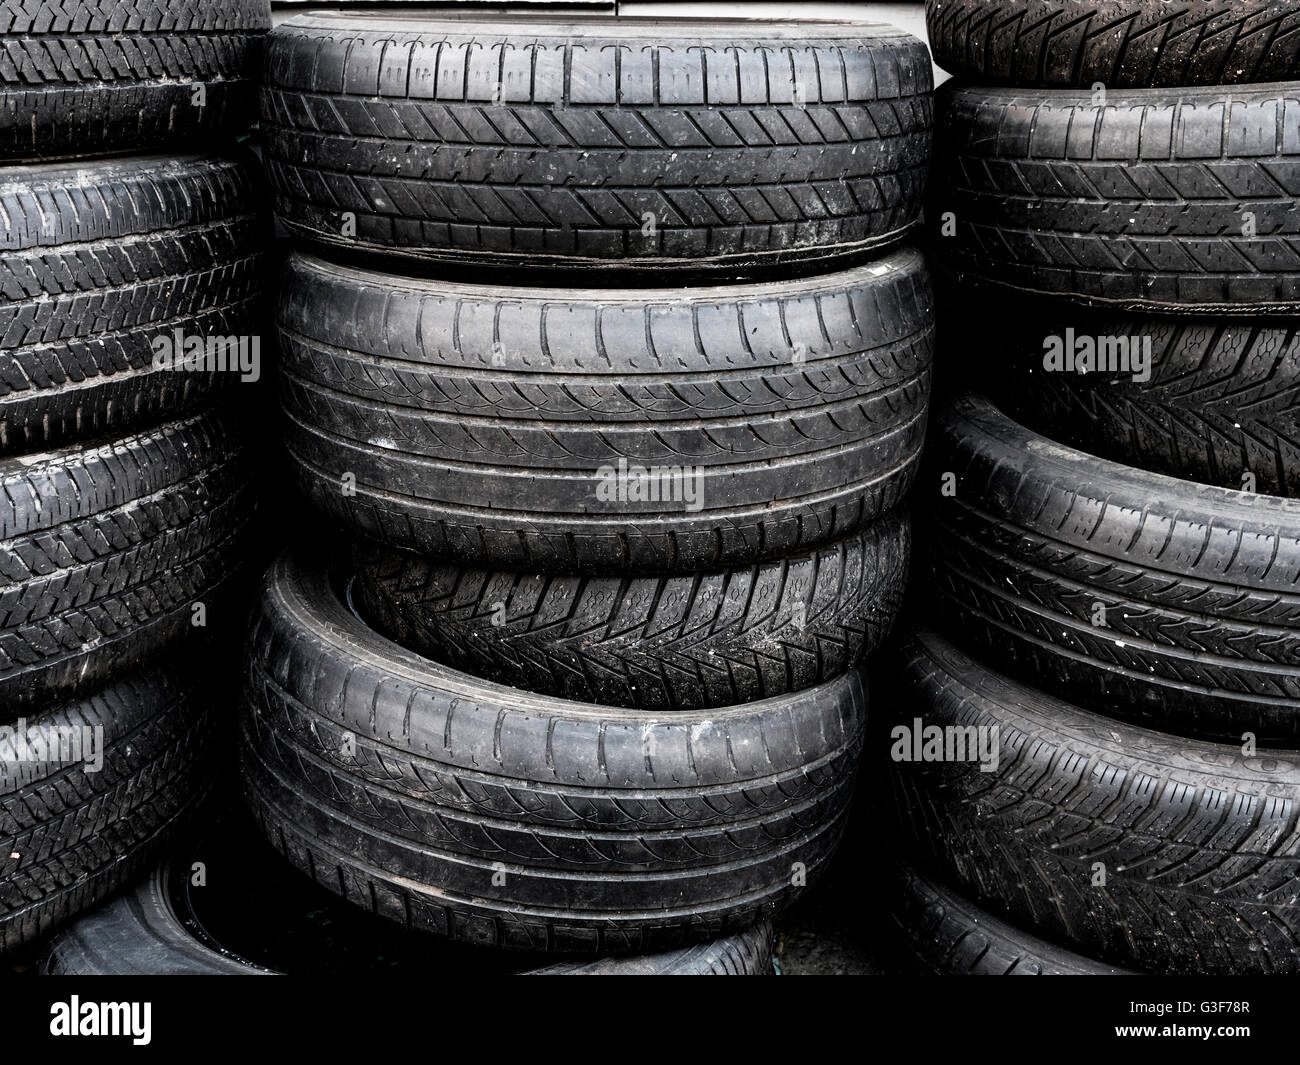 Pila de neumáticos usados, listos para su reciclaje Foto de stock